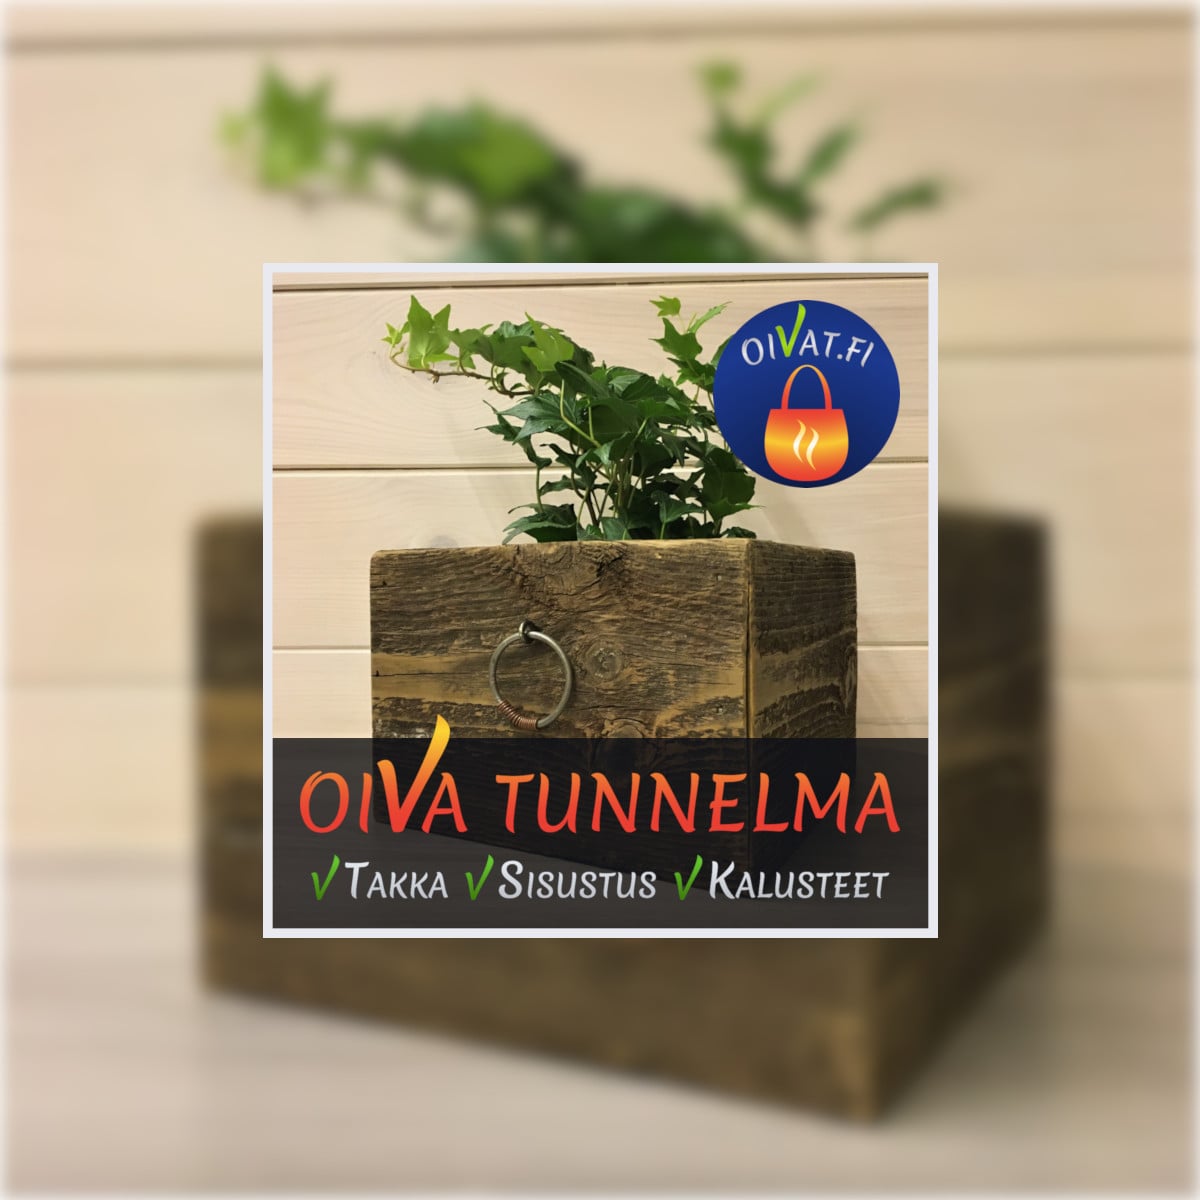 oiVat.fi - Oiva Tunnelma -Takka -Sisustus -Kalusteet